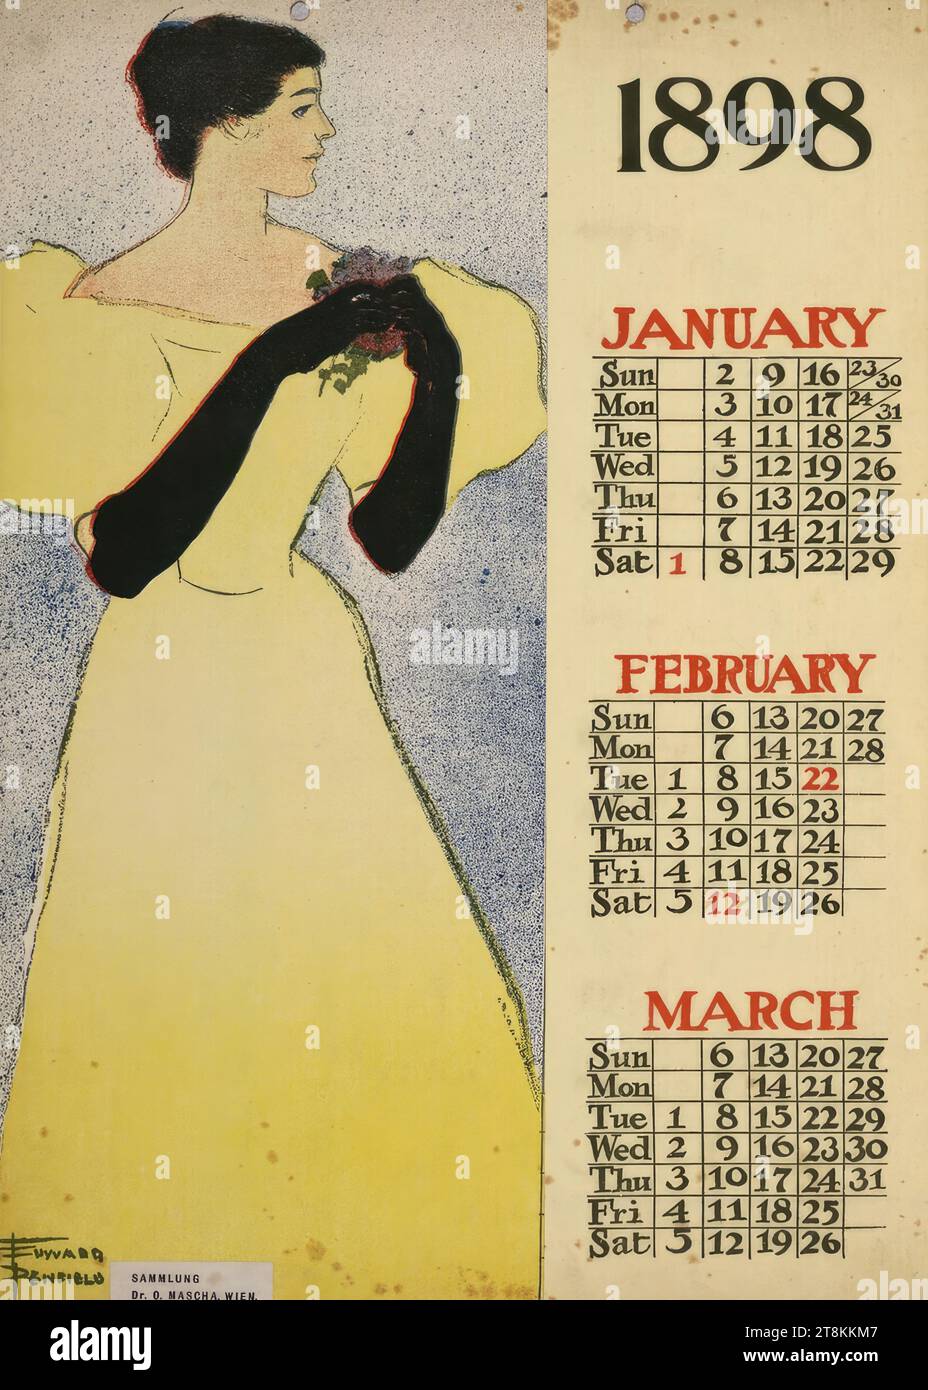 1898; JANUAR, FEBRUAR, MÄRZ, Kalenderblatt, Edward Penfield, USA, 1866 - 1925, 1898, Druck, Farblithografie, Blatt: 355 mm x 260 mm Stockfoto